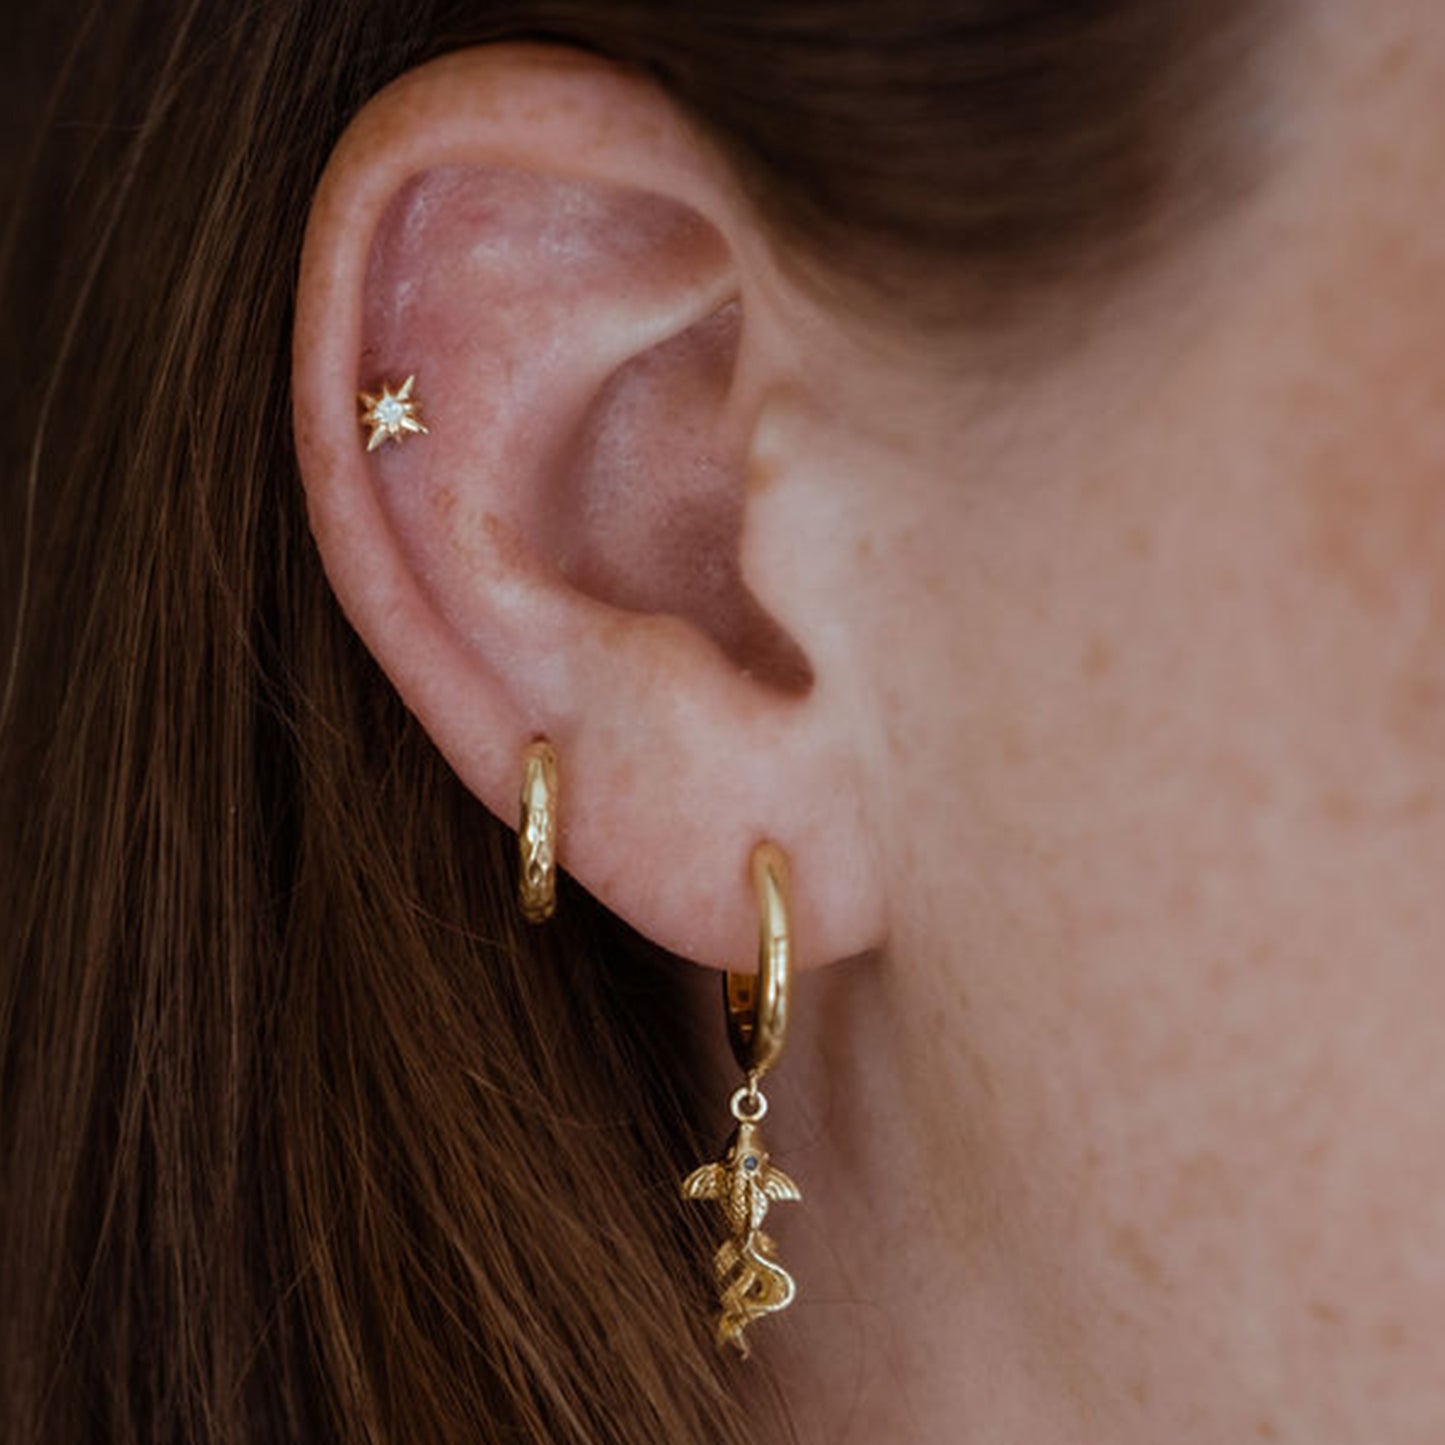 Koi Carp Hoop Earrings in 14ct Gold Vermeil with London Blue Topaz